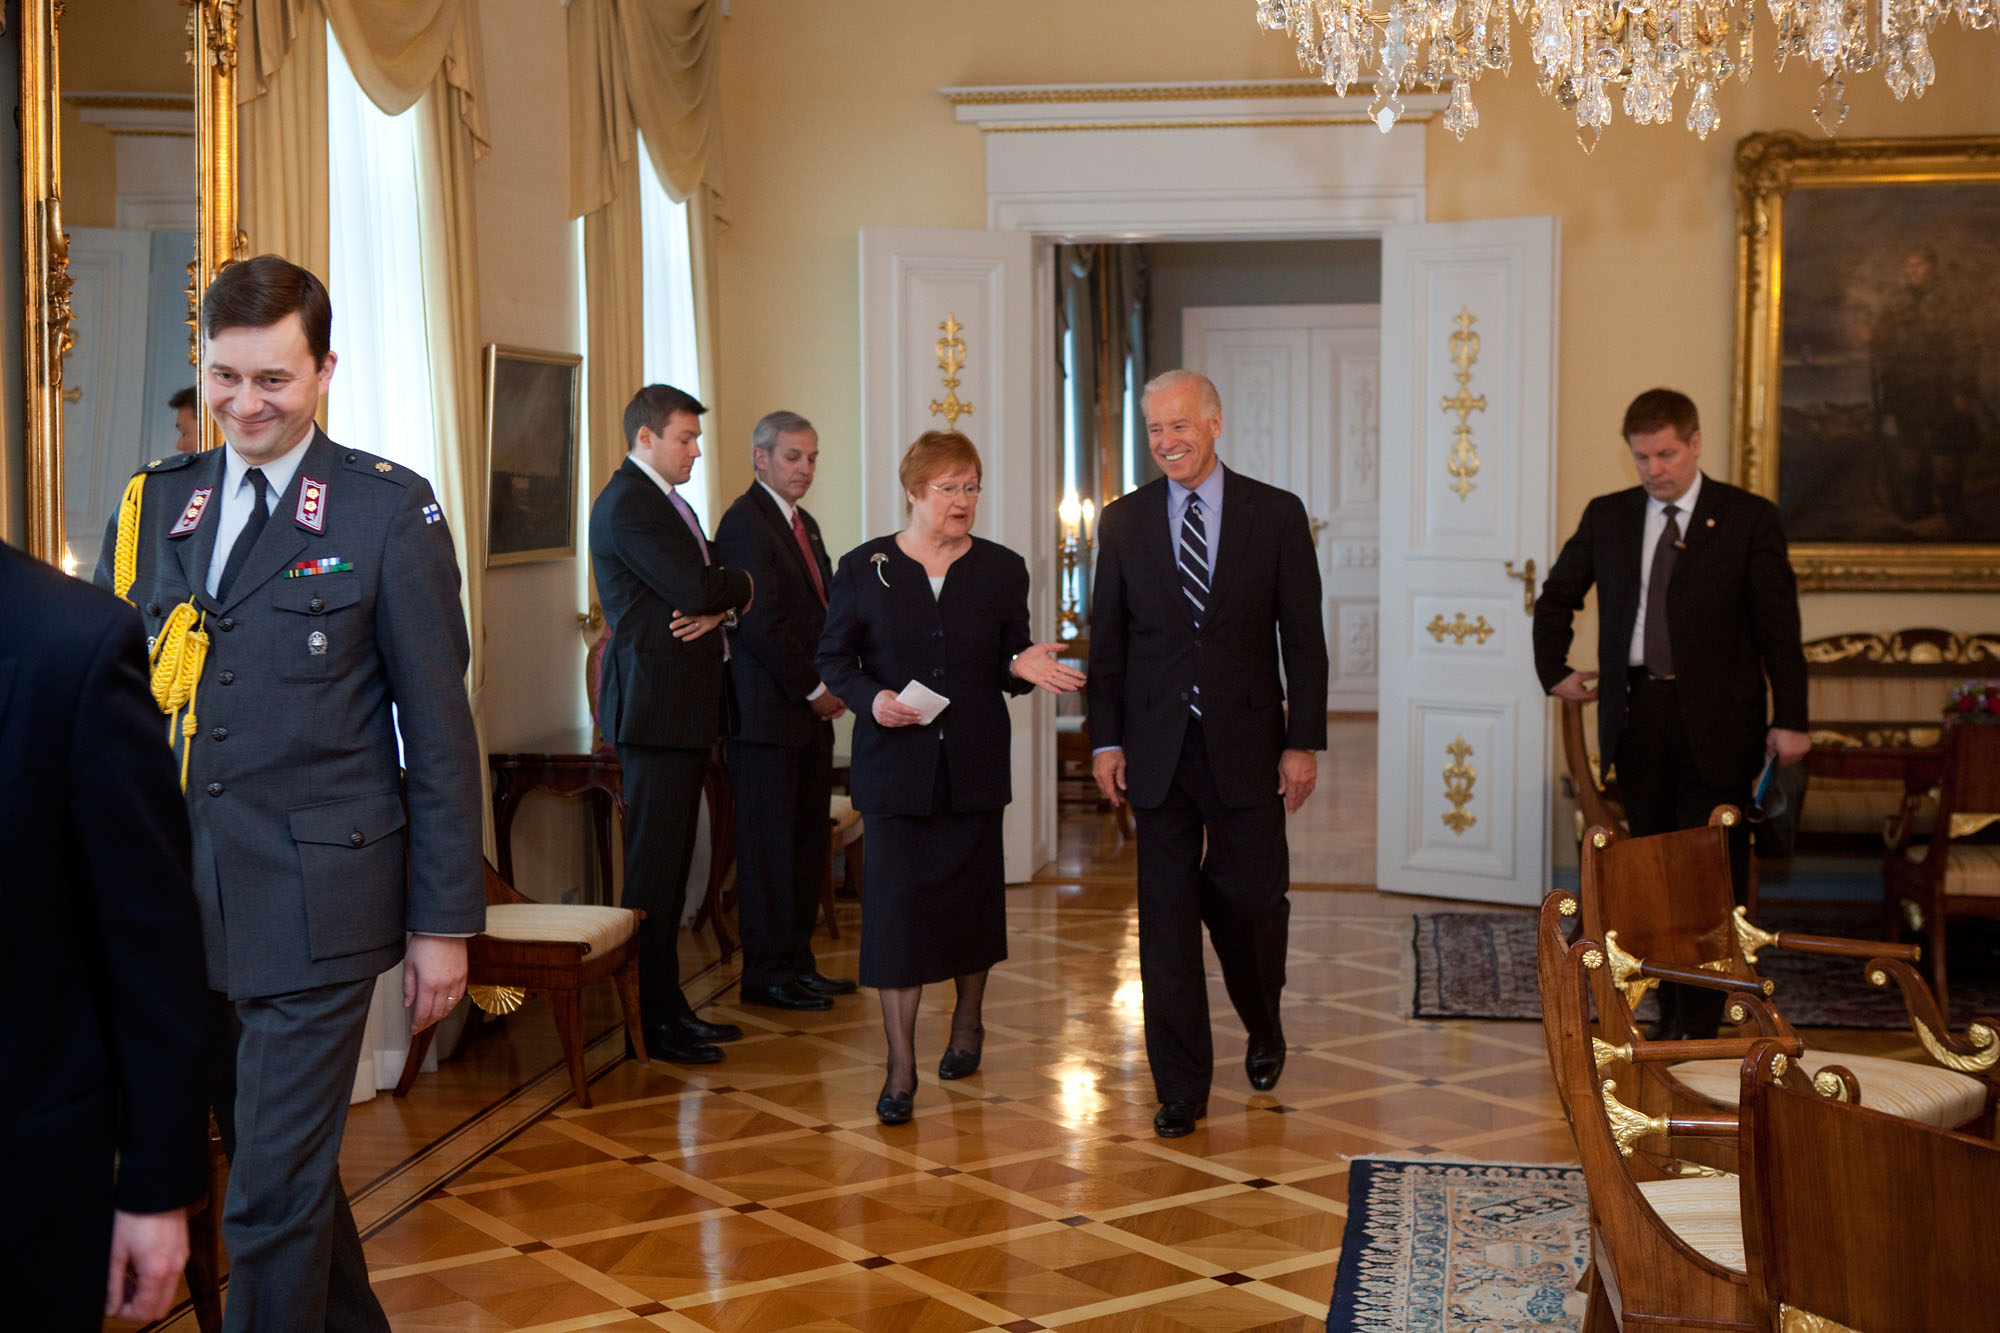 Vice President Joe Biden walks with with Finnish President Tarja Halonen